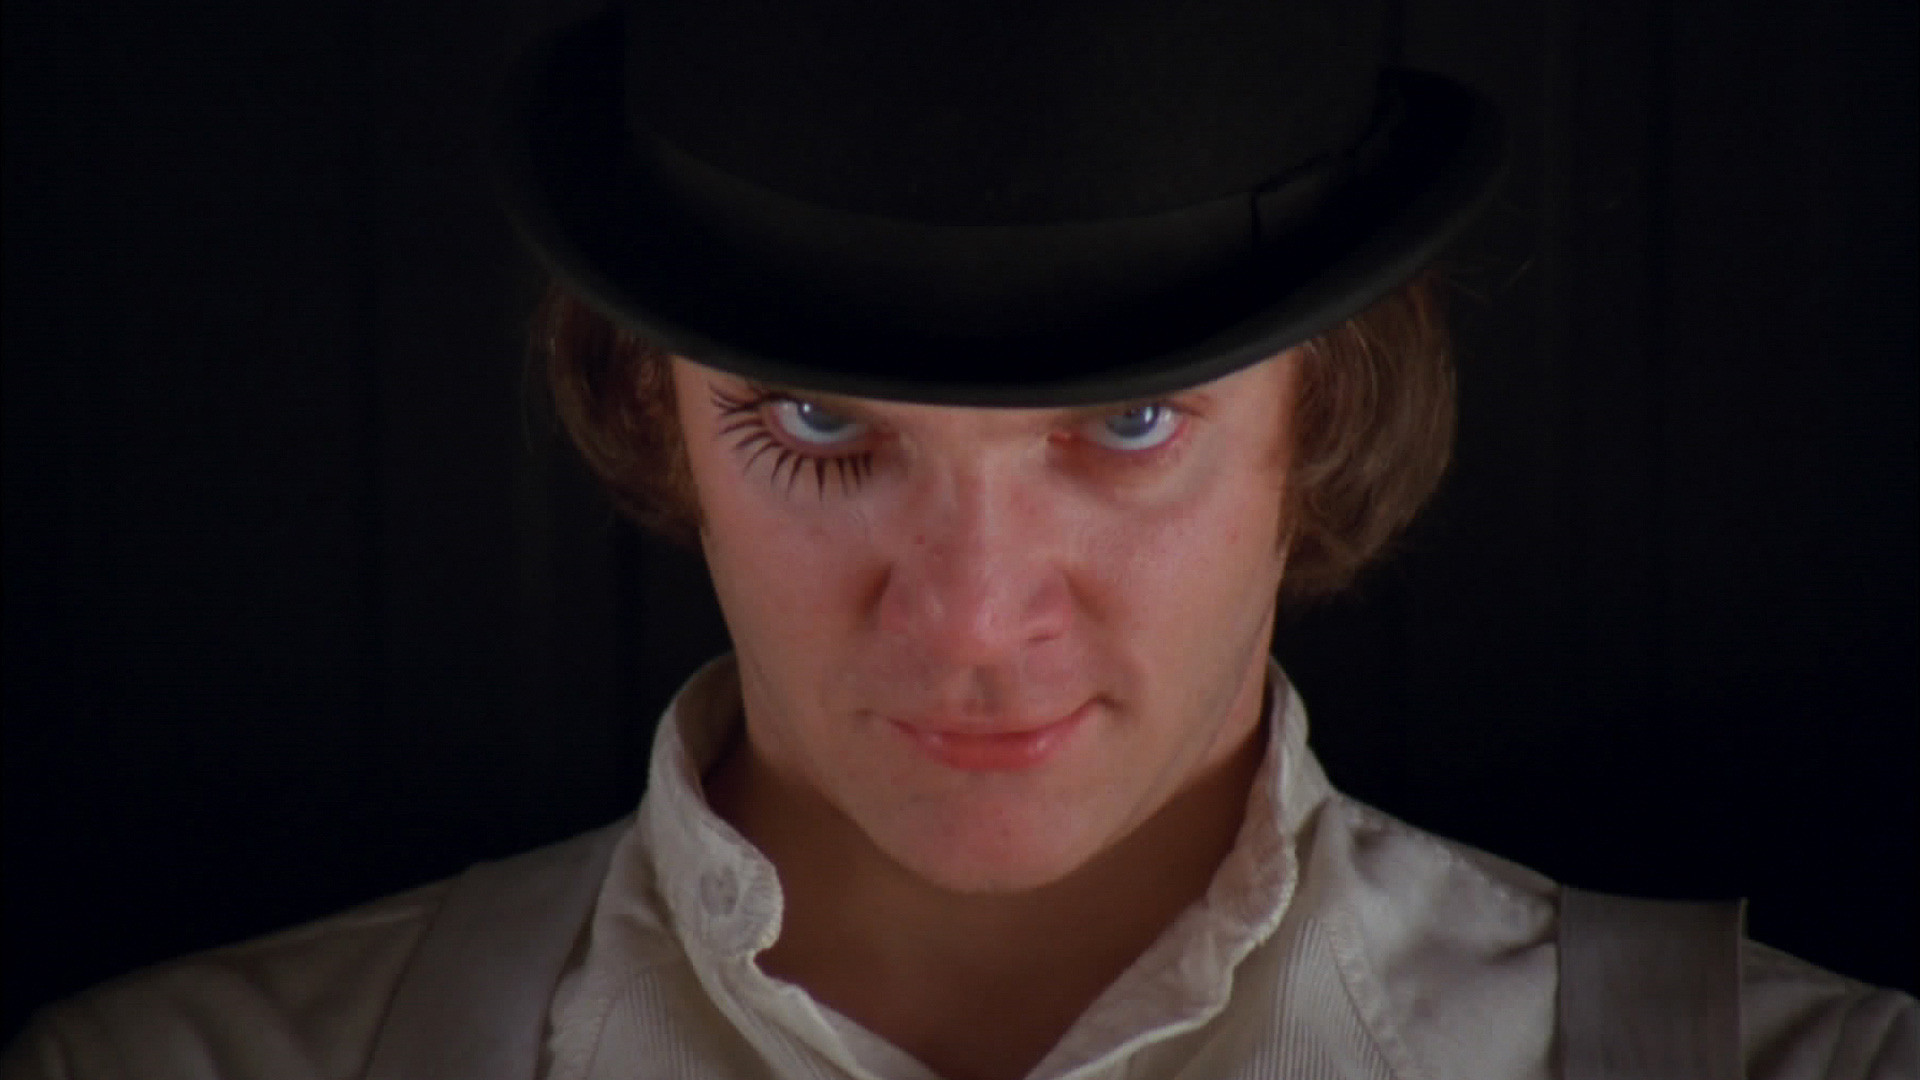 Homenageado da Mostra, Kubrick ganhou mais prestígio desde sua morte, diz crítico